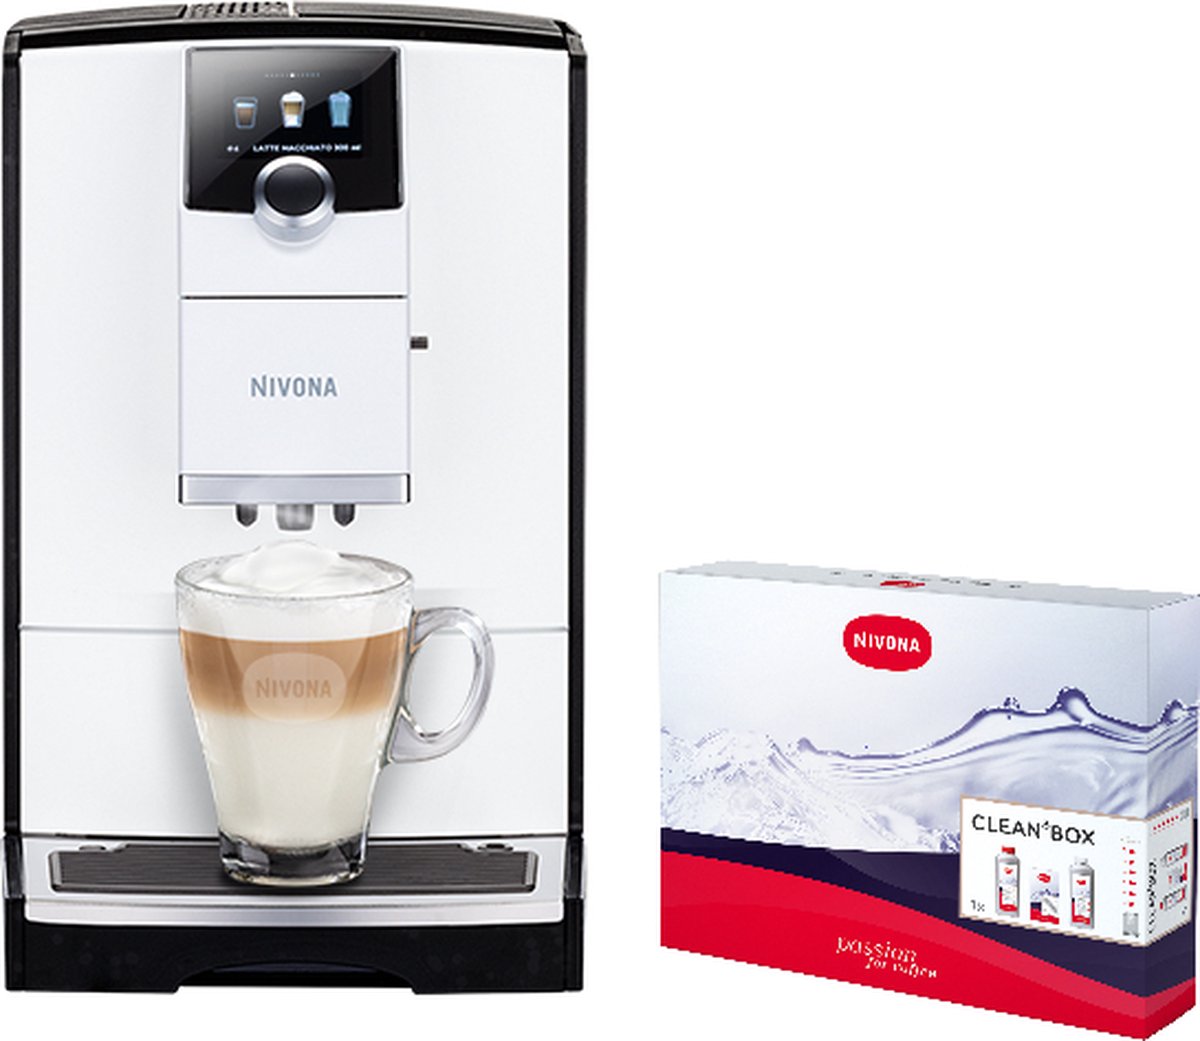 Nivona 796 volautomaat espressomachine met automatische melkopschuimer [incl. gratis schoonmaakpakket twv 37 99 en gratis verse koffiebonen van Koepoort Koffie